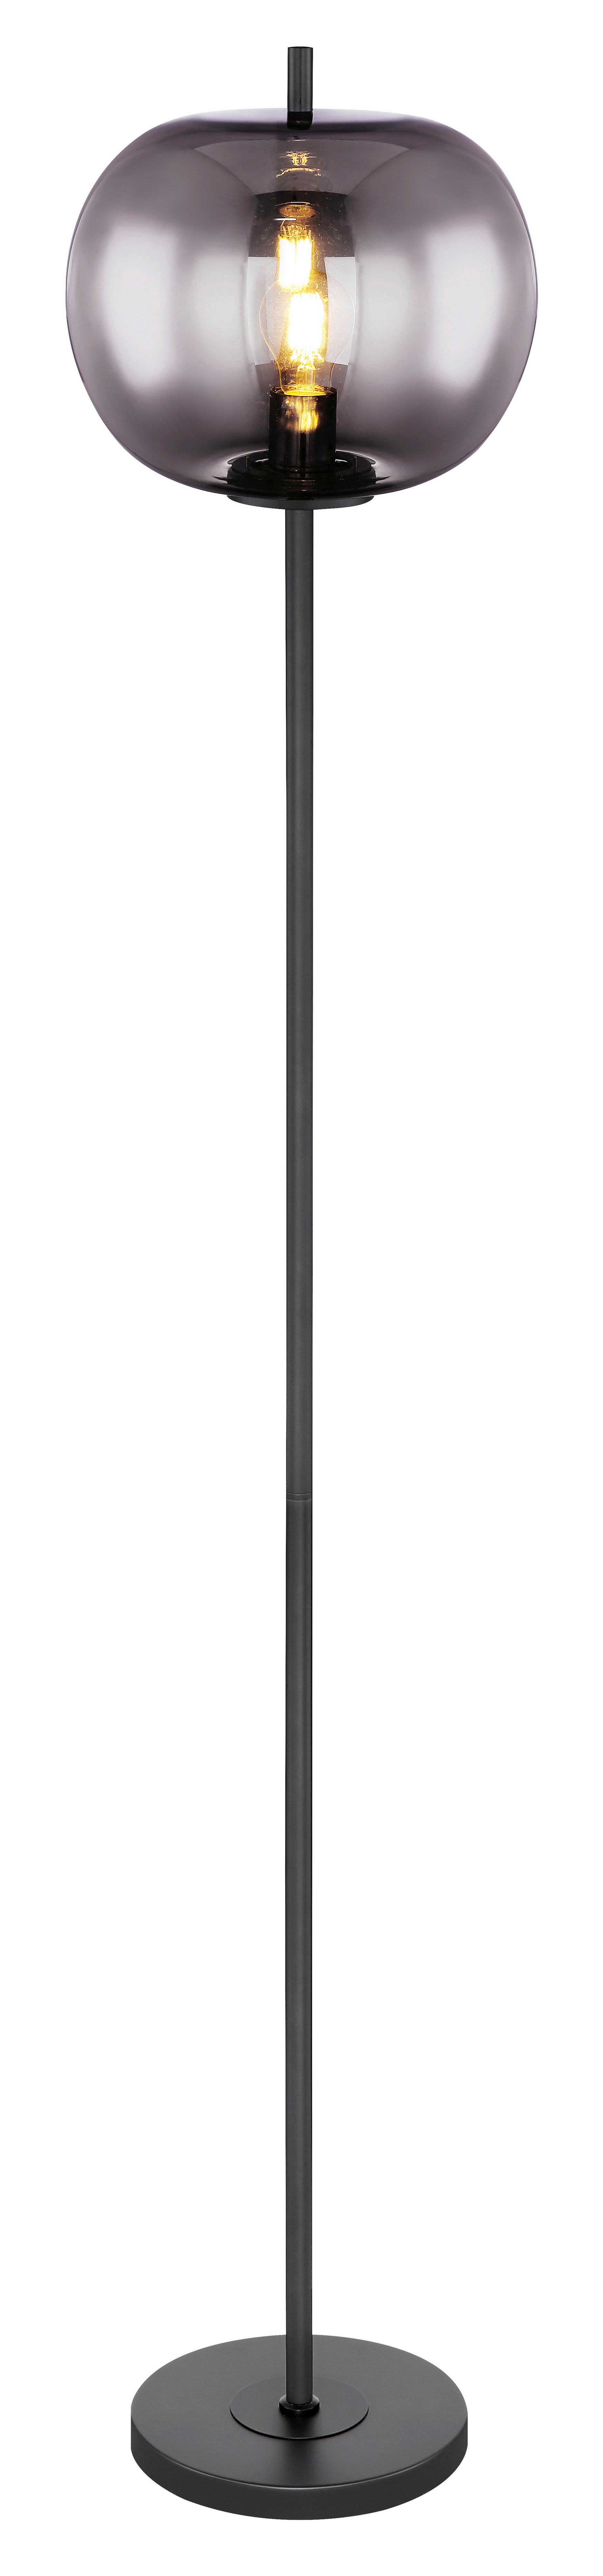 STEHLEUCHTE 15345S - Schwarz/Grau, Design, Glas/Metall (30/160cm) - Globo